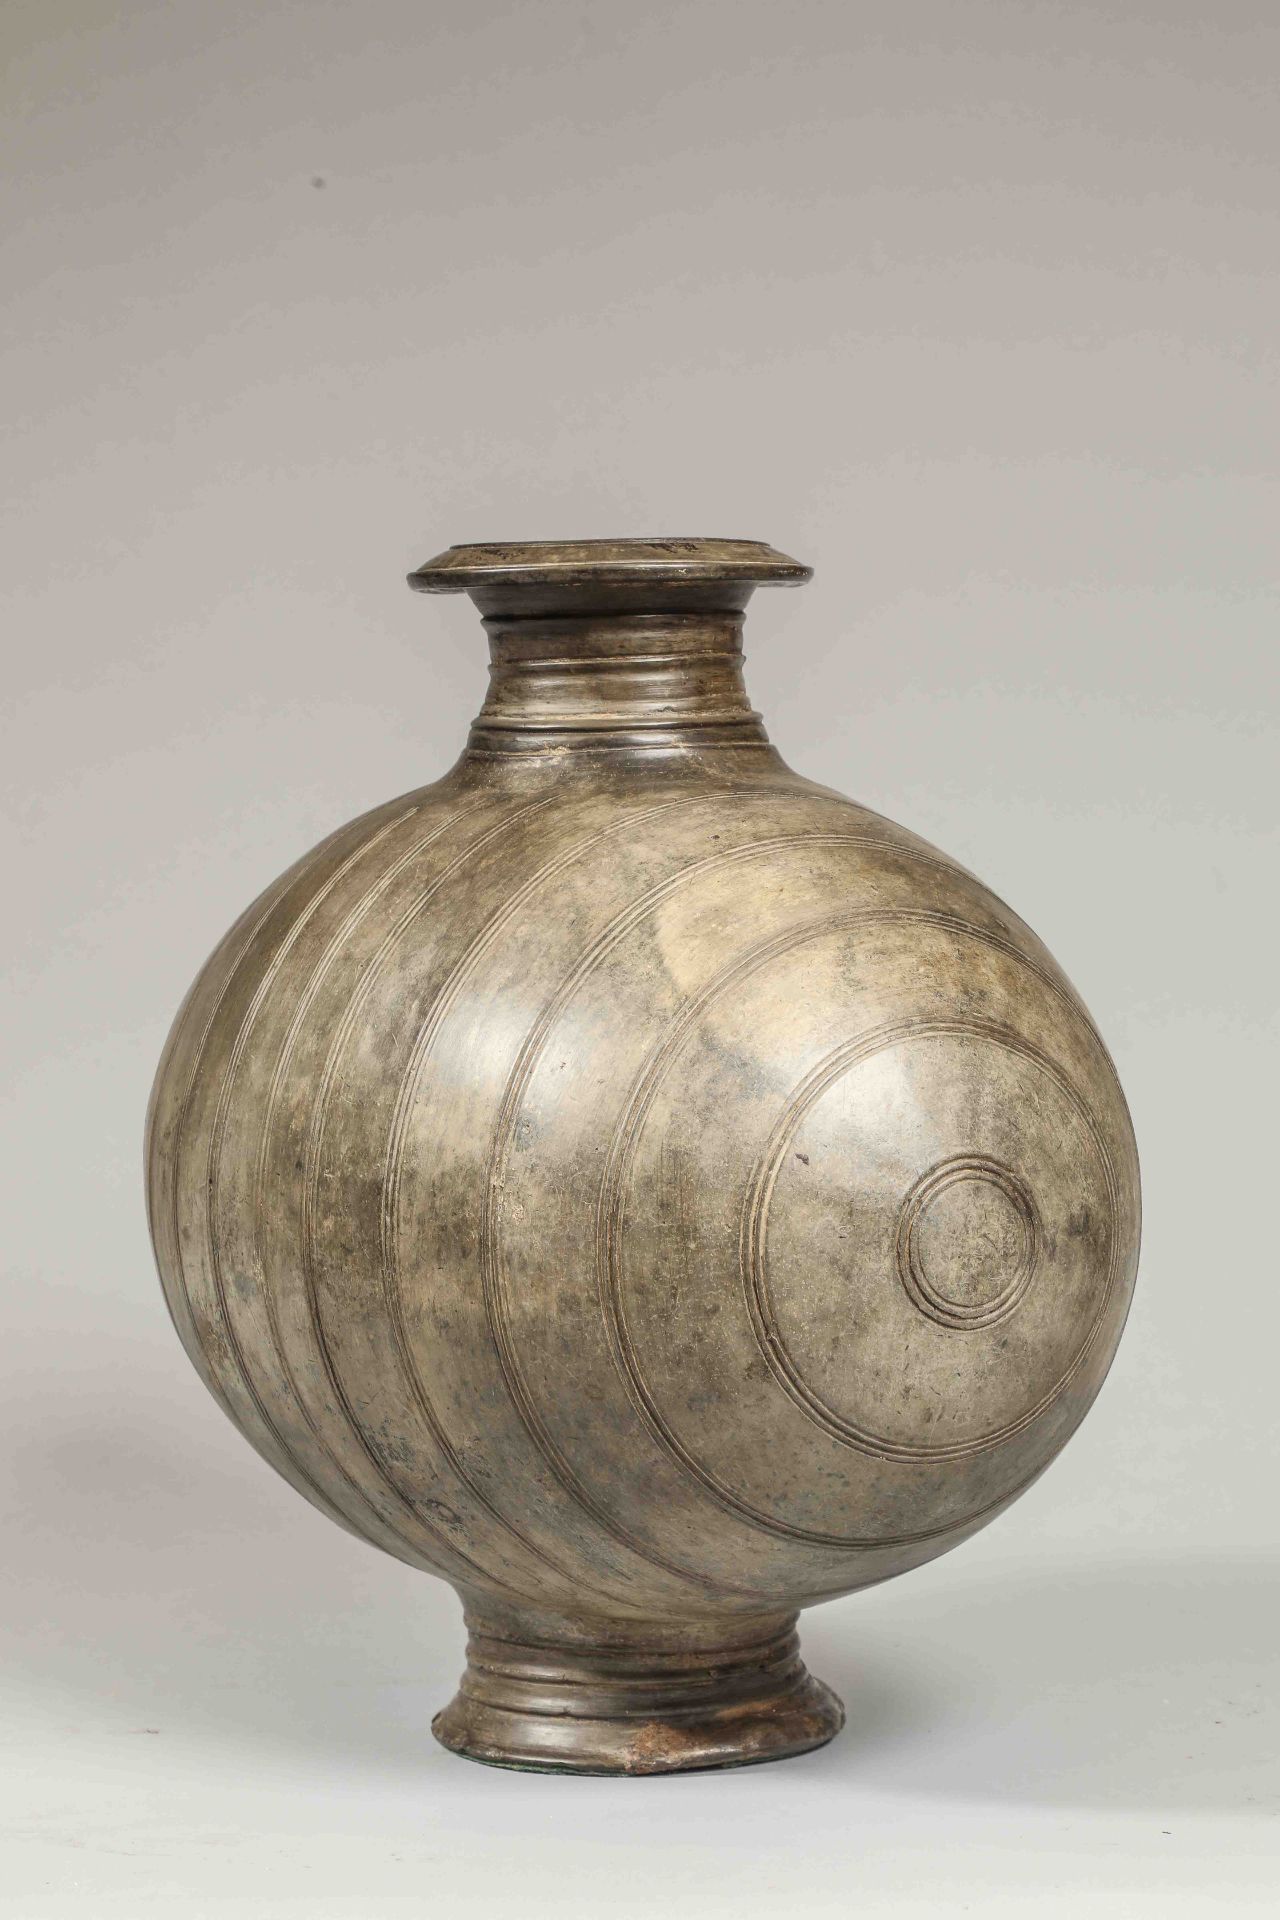 Vase « Cocon » sur piédouche décoré de lignes verticales incisées Terre cuite grise Chine Dynastie - Image 2 of 4